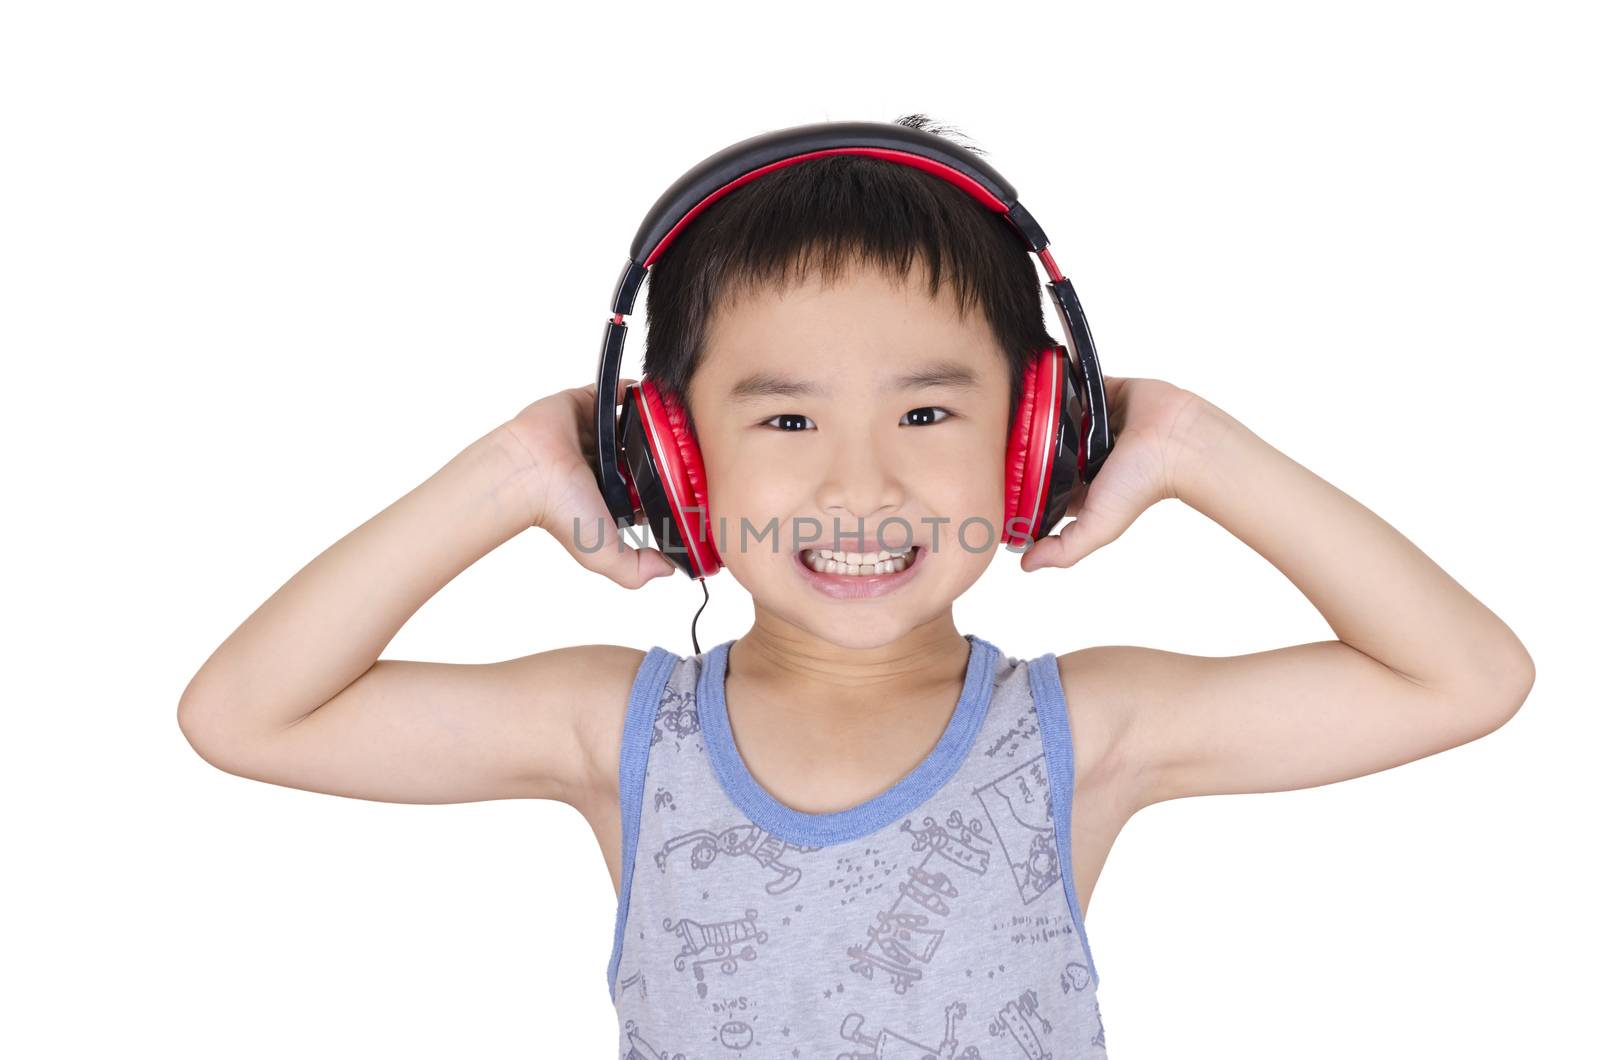 Cute children listen to music